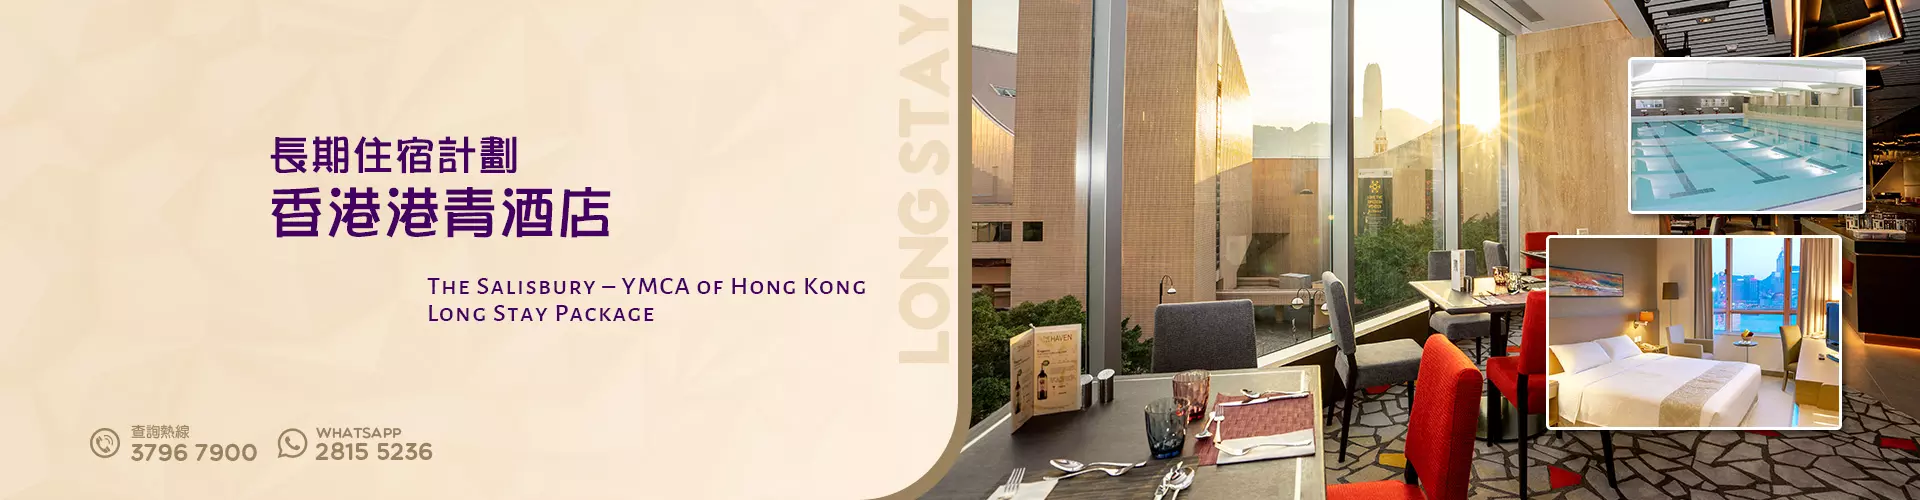 長期住宿計劃 - 香港港青酒店